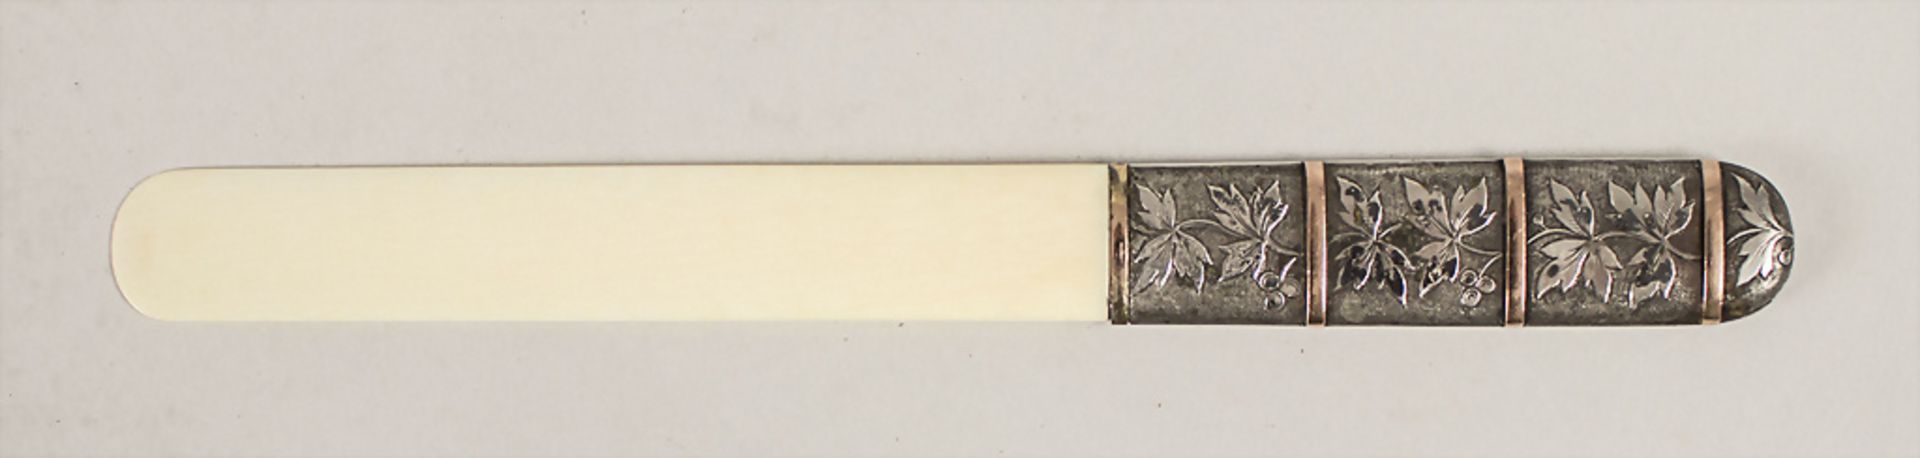 Brieföffner mit Silbergriff / A silver letter opener, Frankreich, um 1880